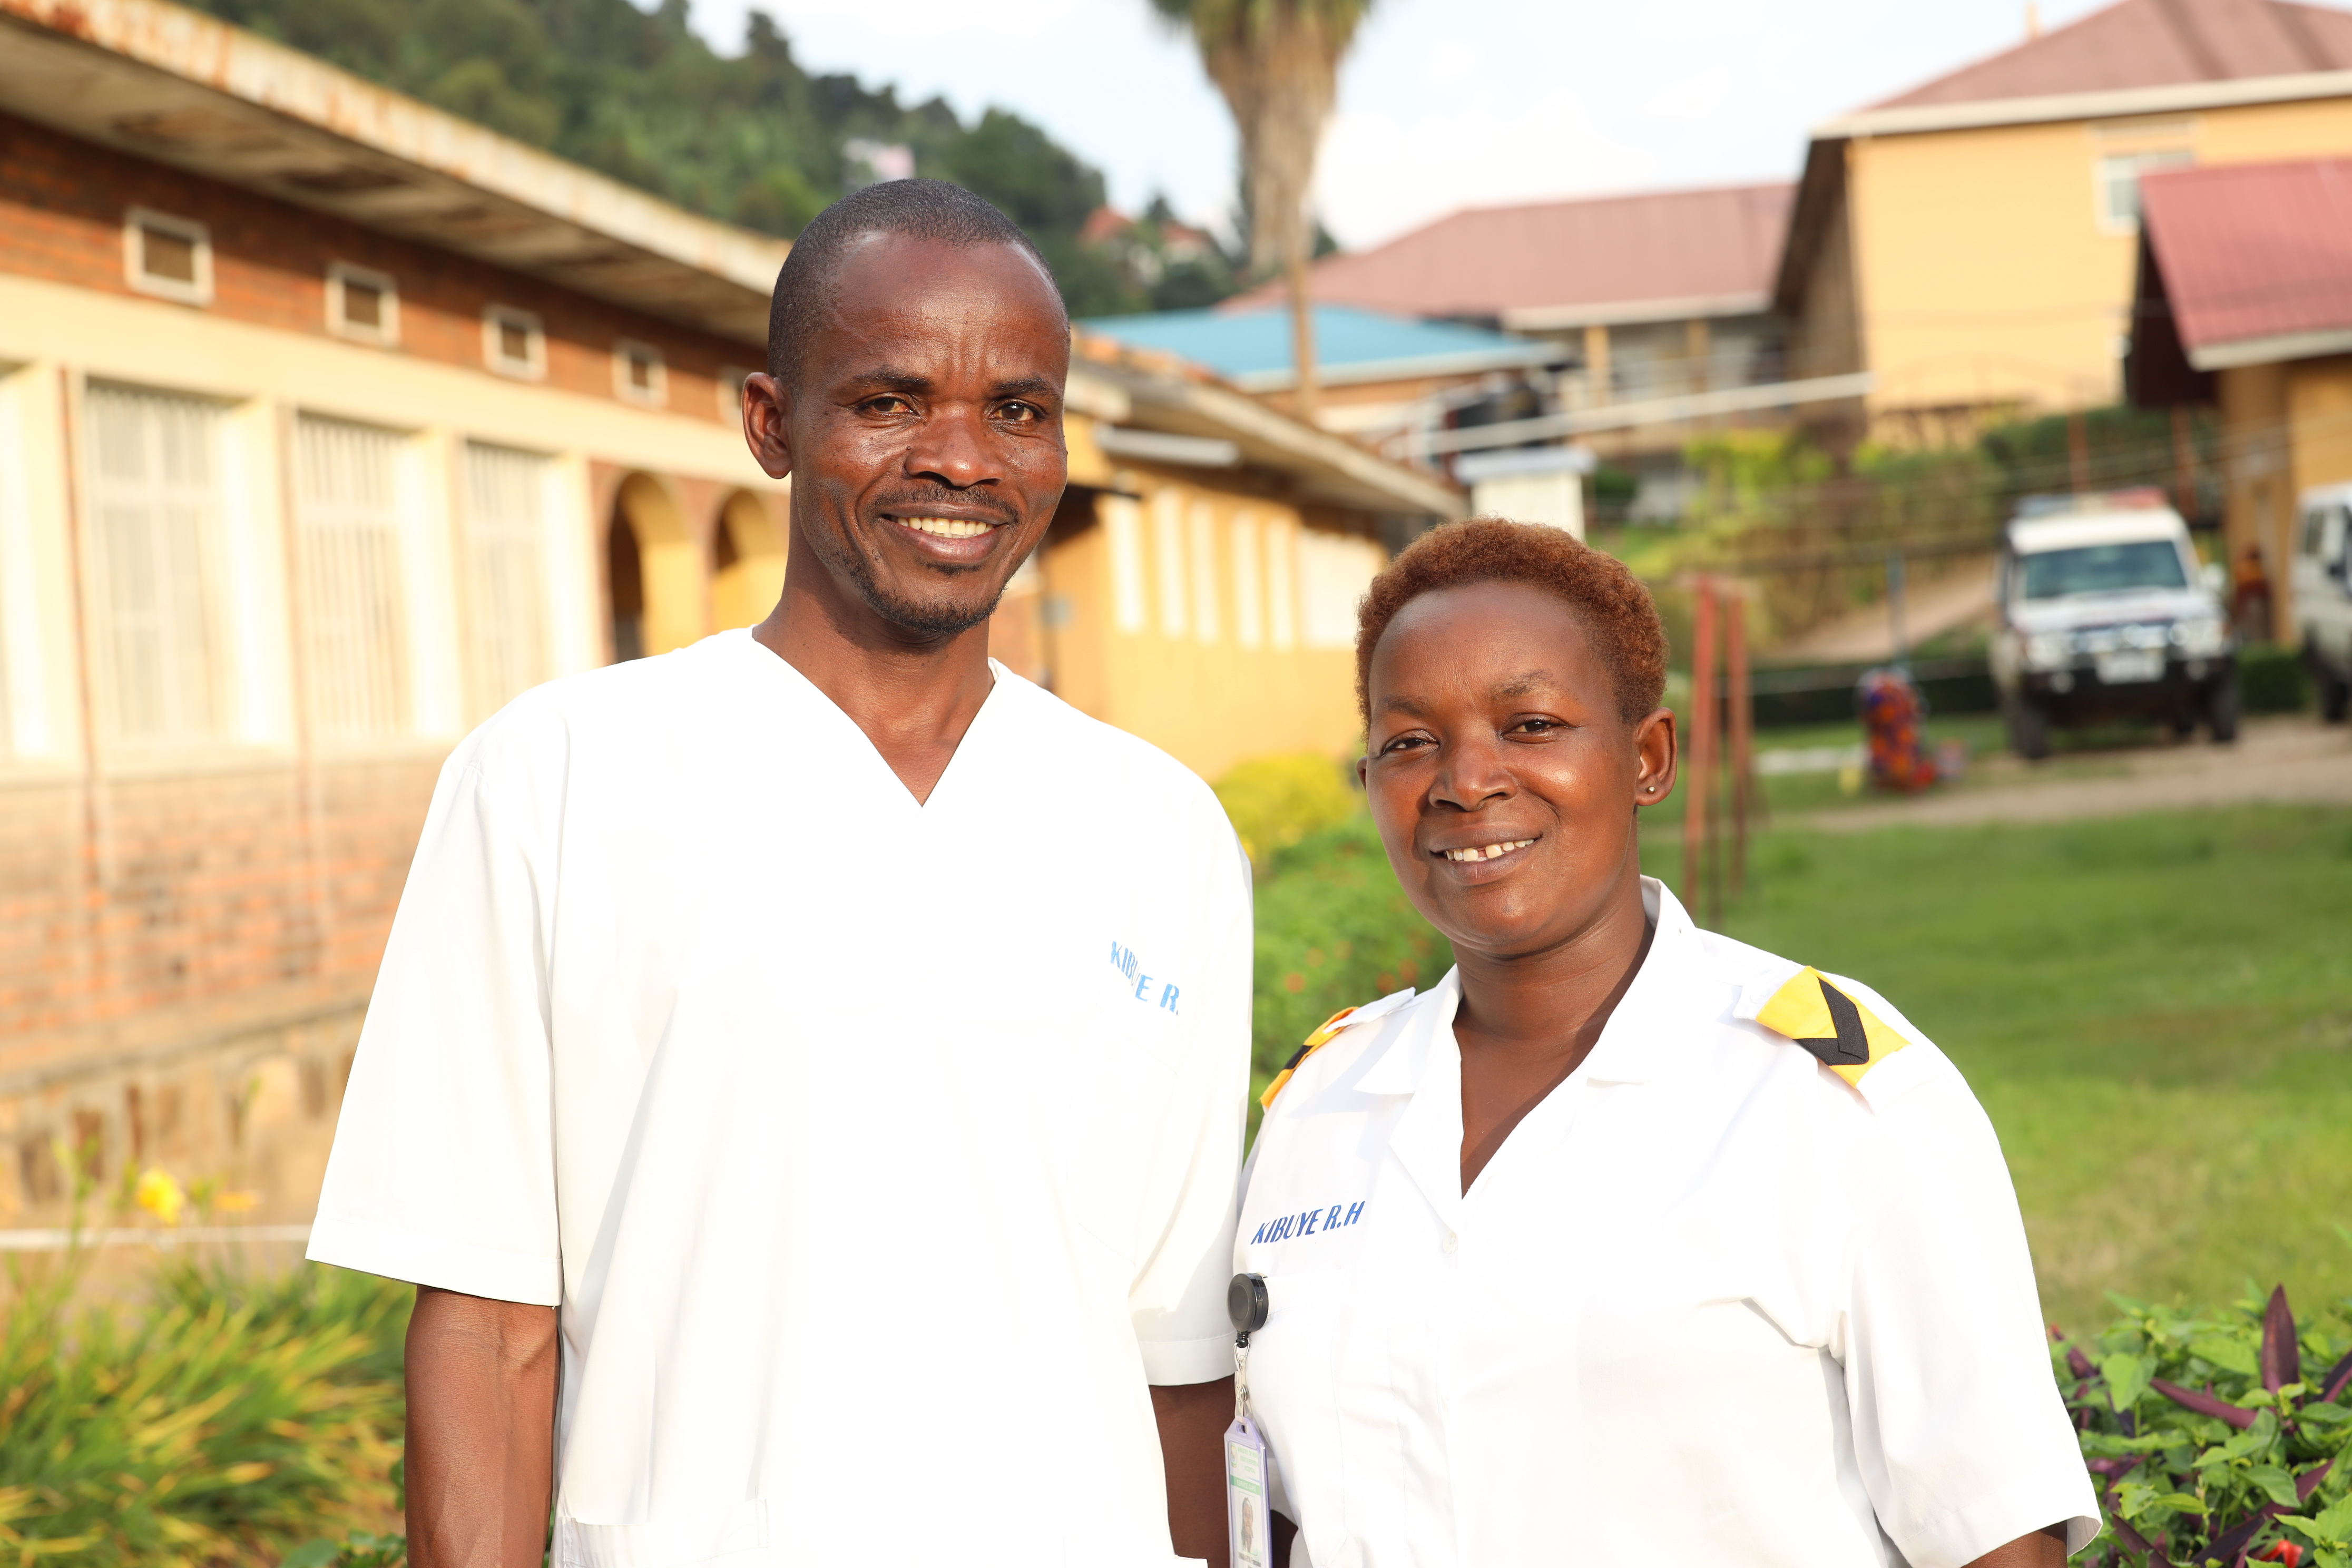 Justin Ndangamira, Emergency Unit Manager and Francoise Uwamariya, GBV Officer at Kibuye Hospital